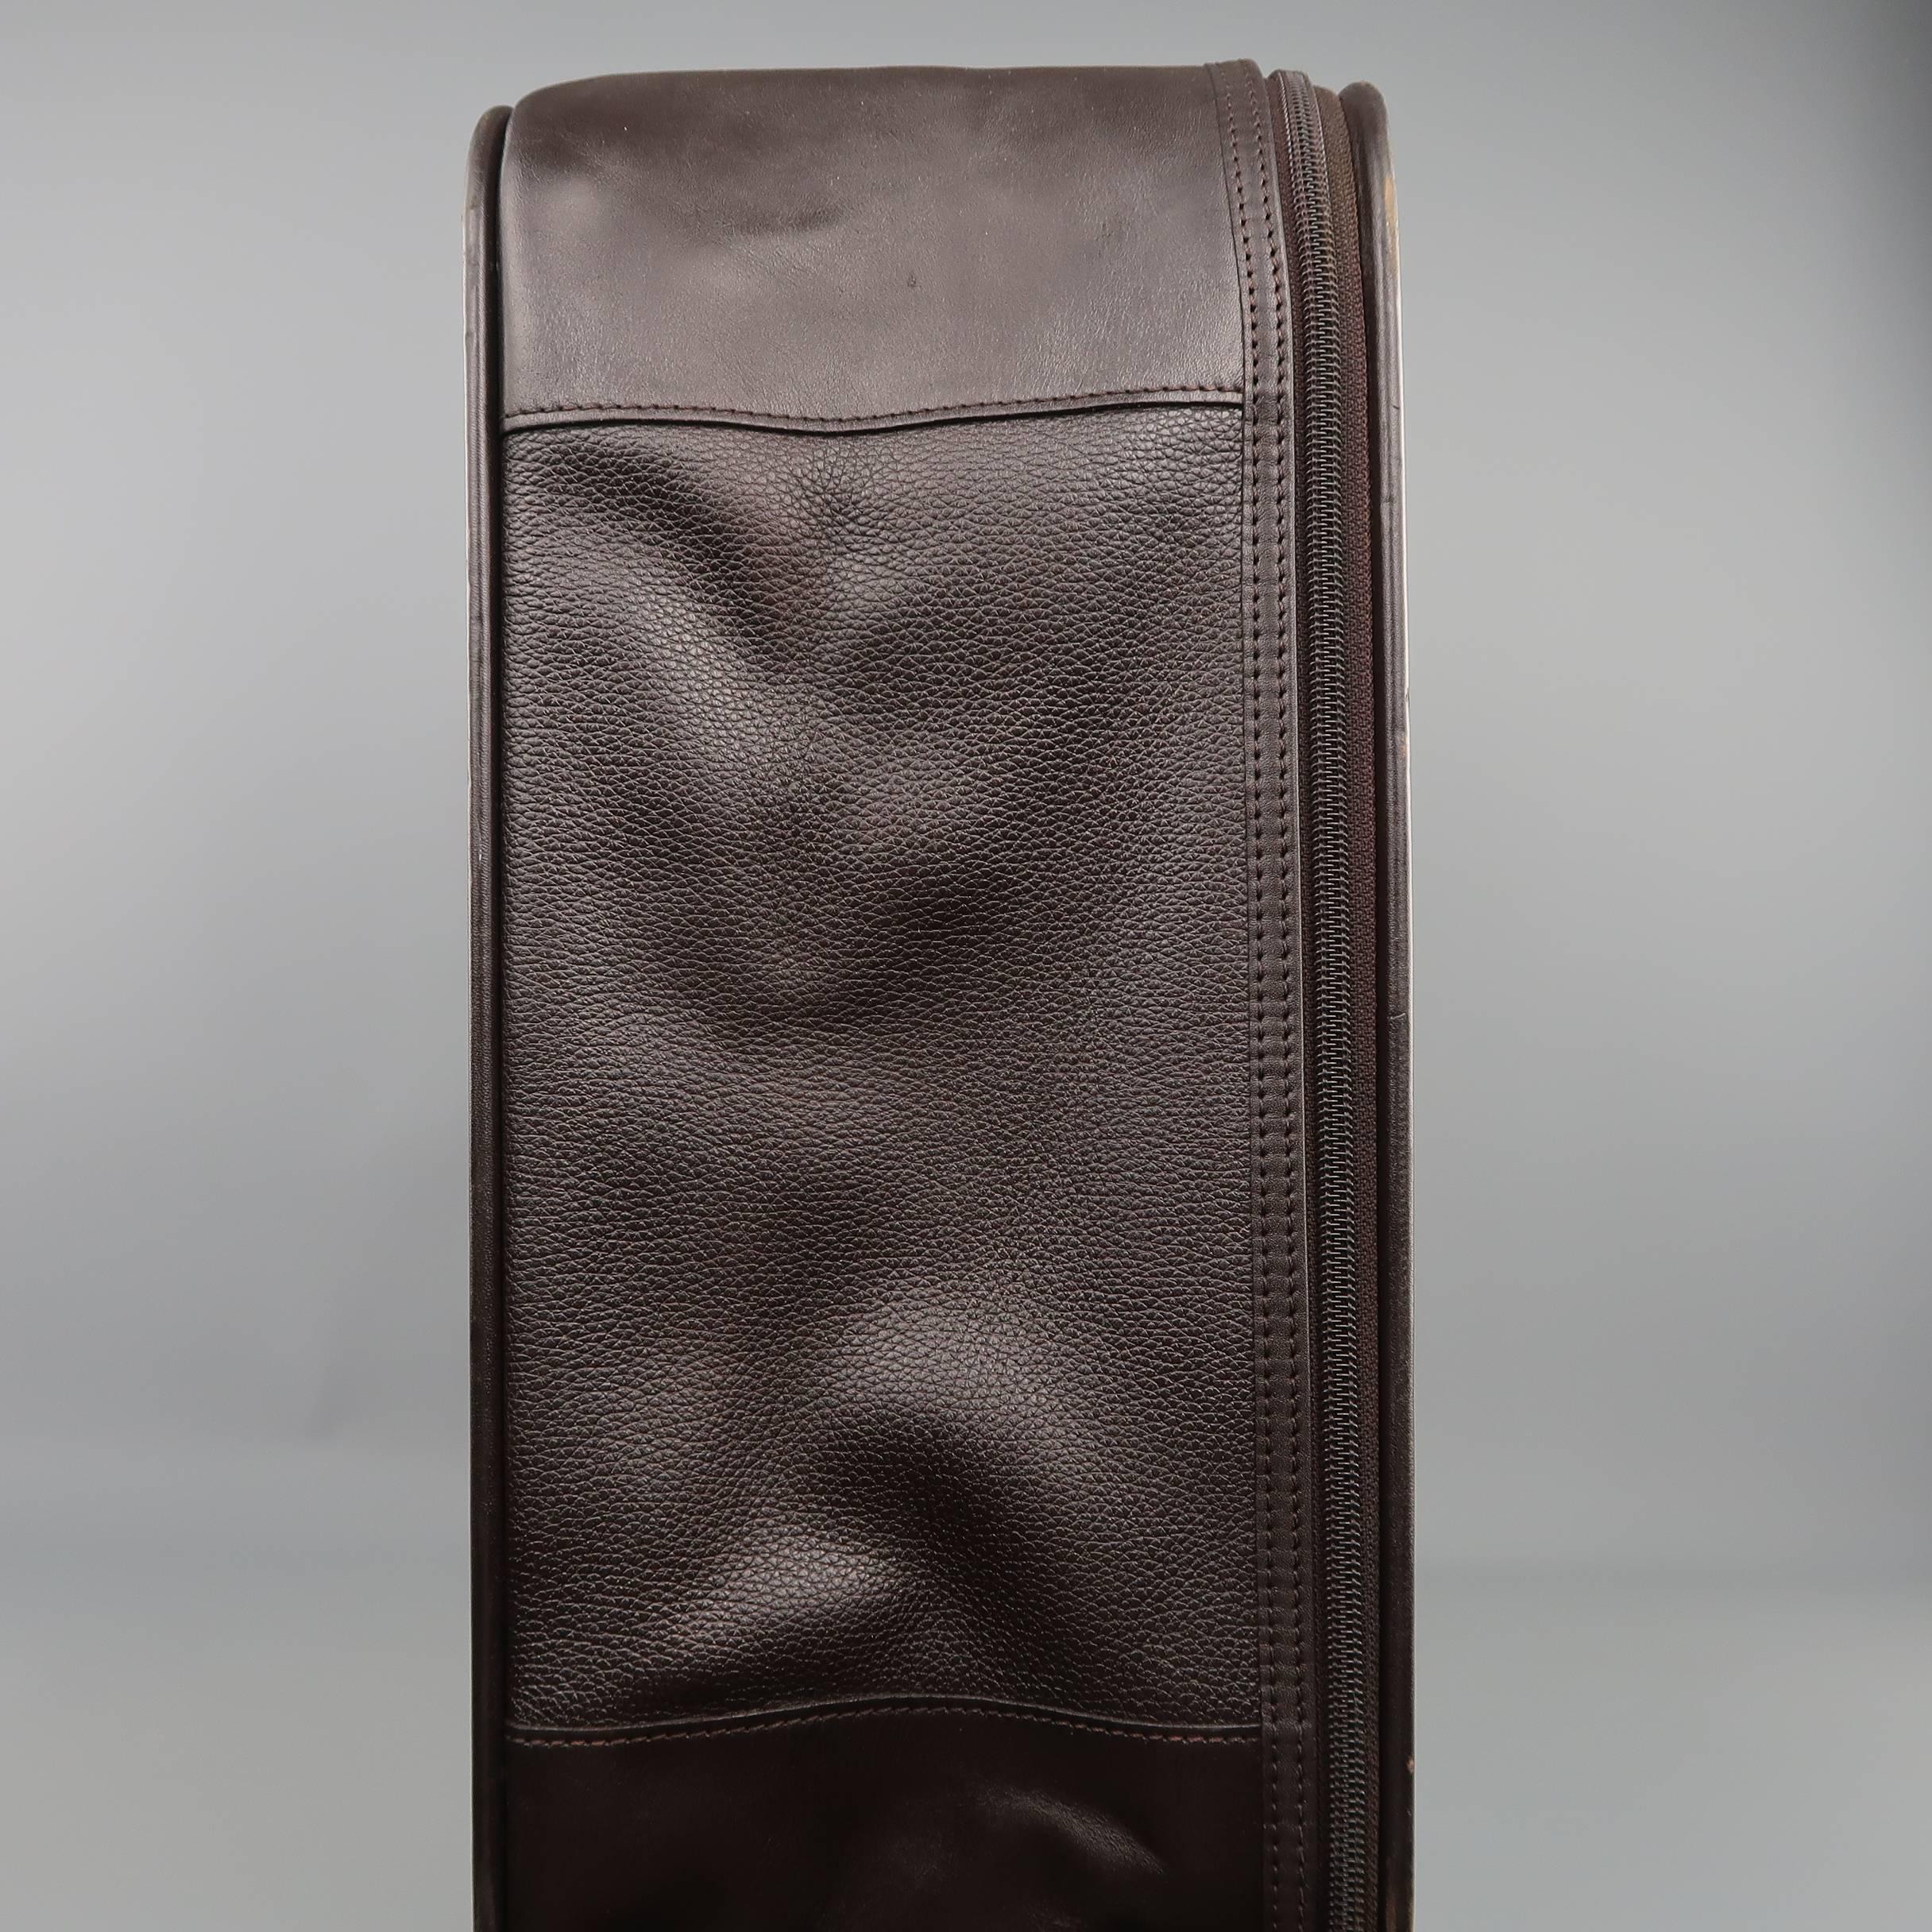 LONGCHAMP Dark Brown Leather Carry On Suitcase Travel Bag für Damen oder Herren